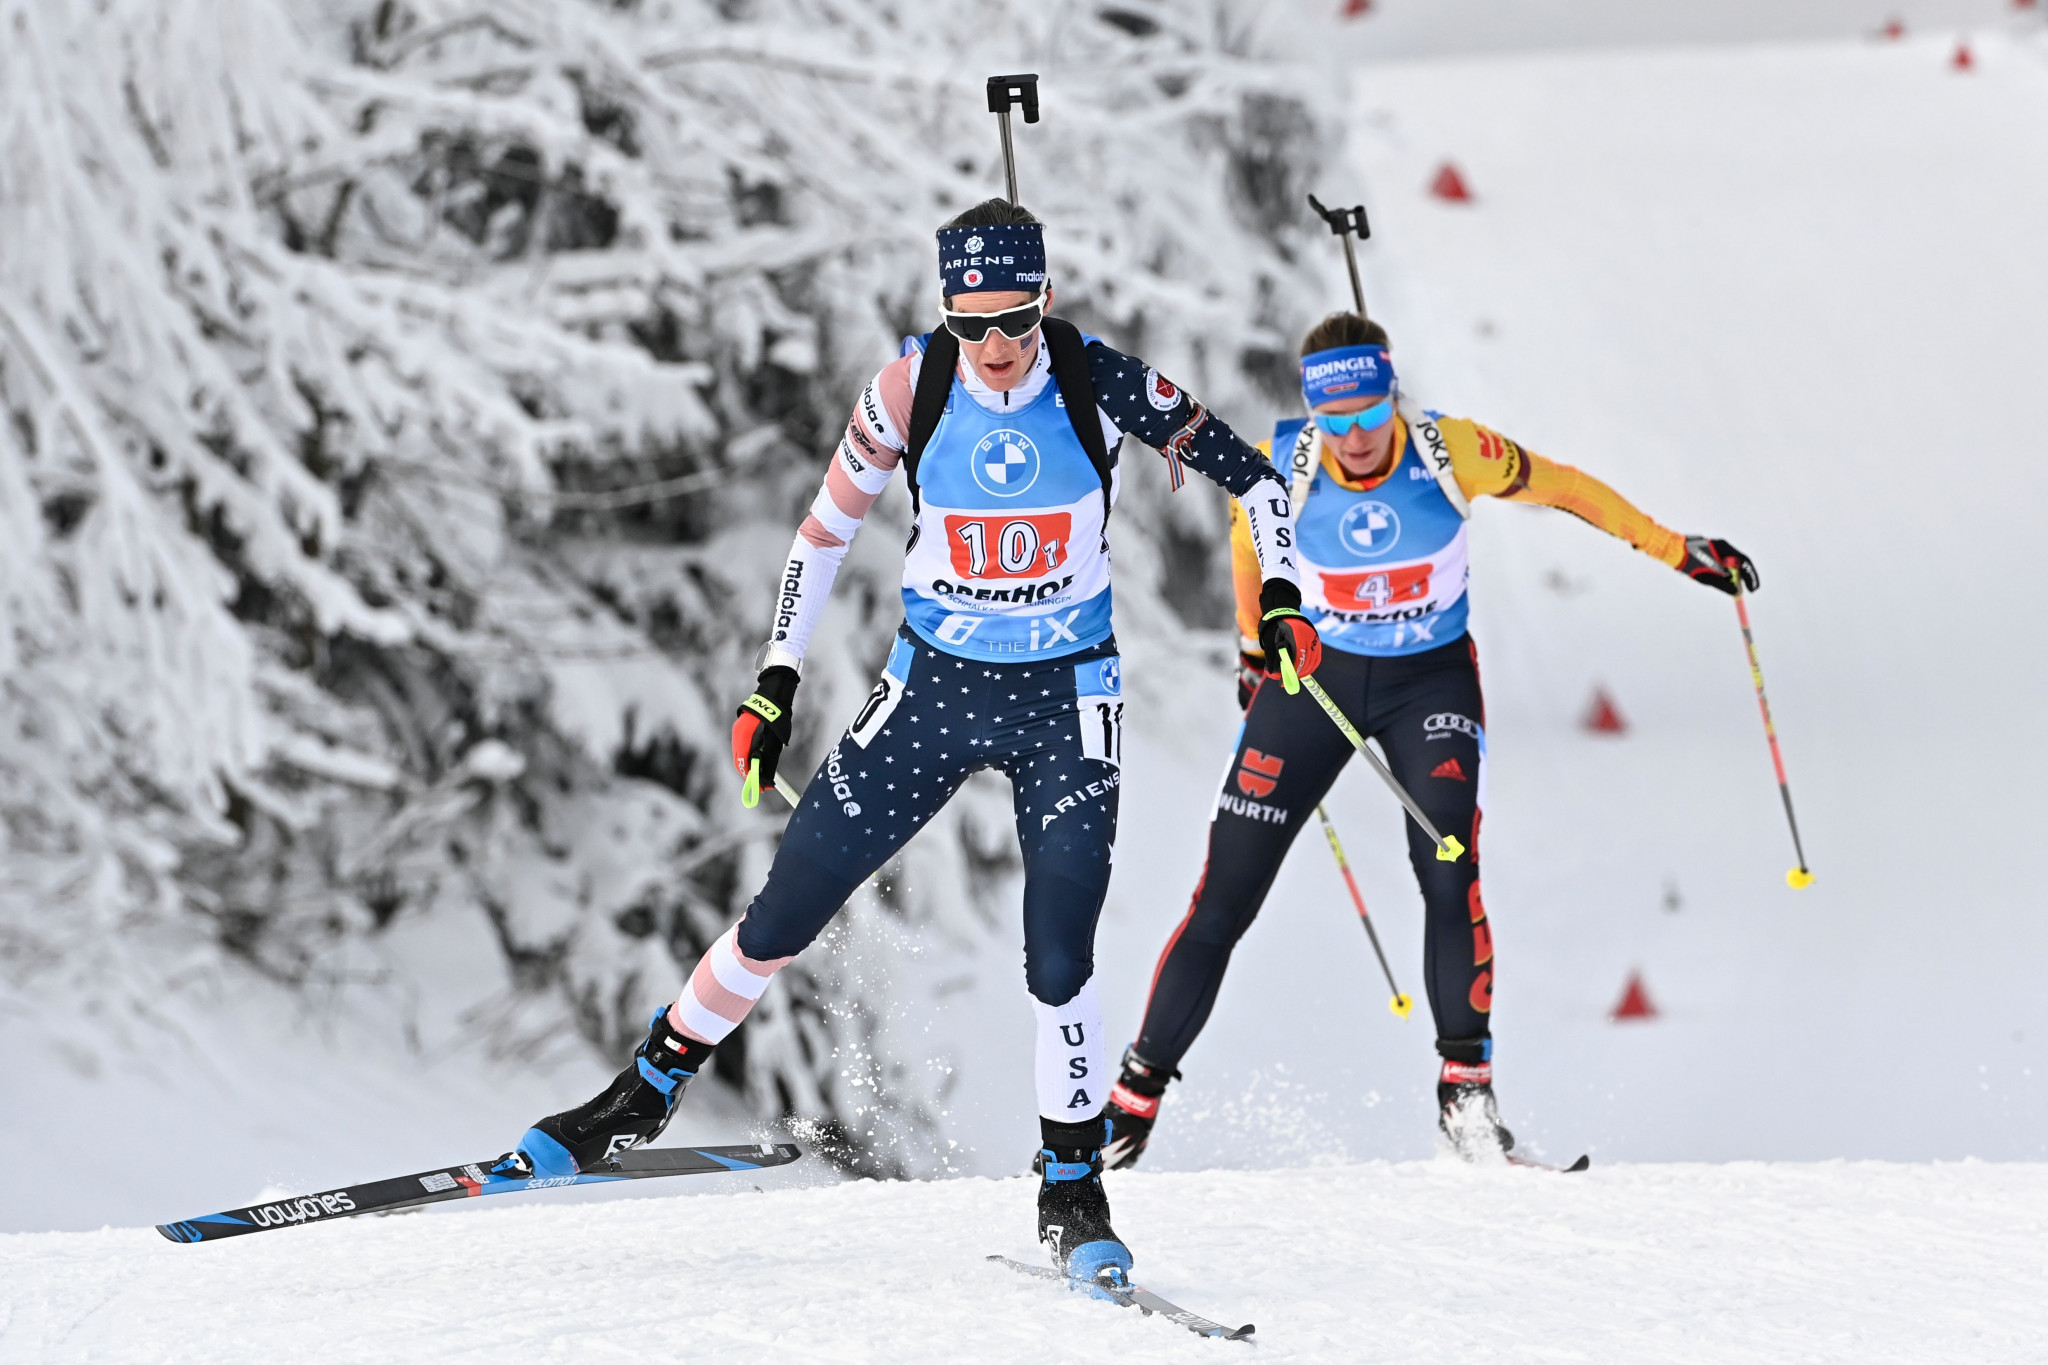 Le biathlon américain espère que le mont Van Hoevenberg deviendra une étape régulière sur le circuit de la Coupe du monde de biathlon © Getty Images